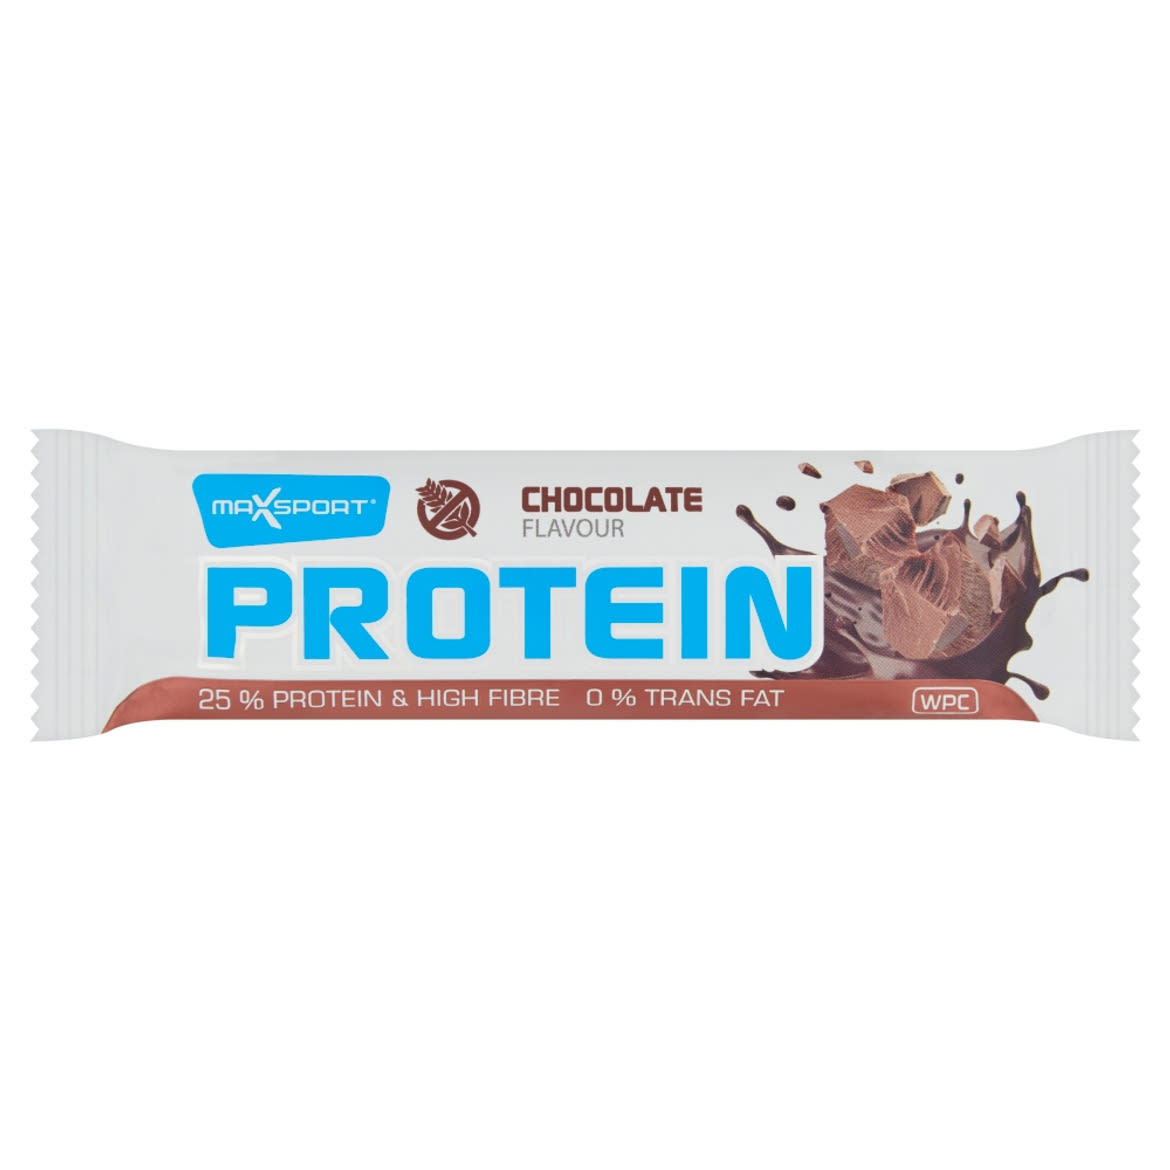 MaxSport Protein gluténmentes, fehérje tartalmú szelet étcsokoládé ízű bevonattal